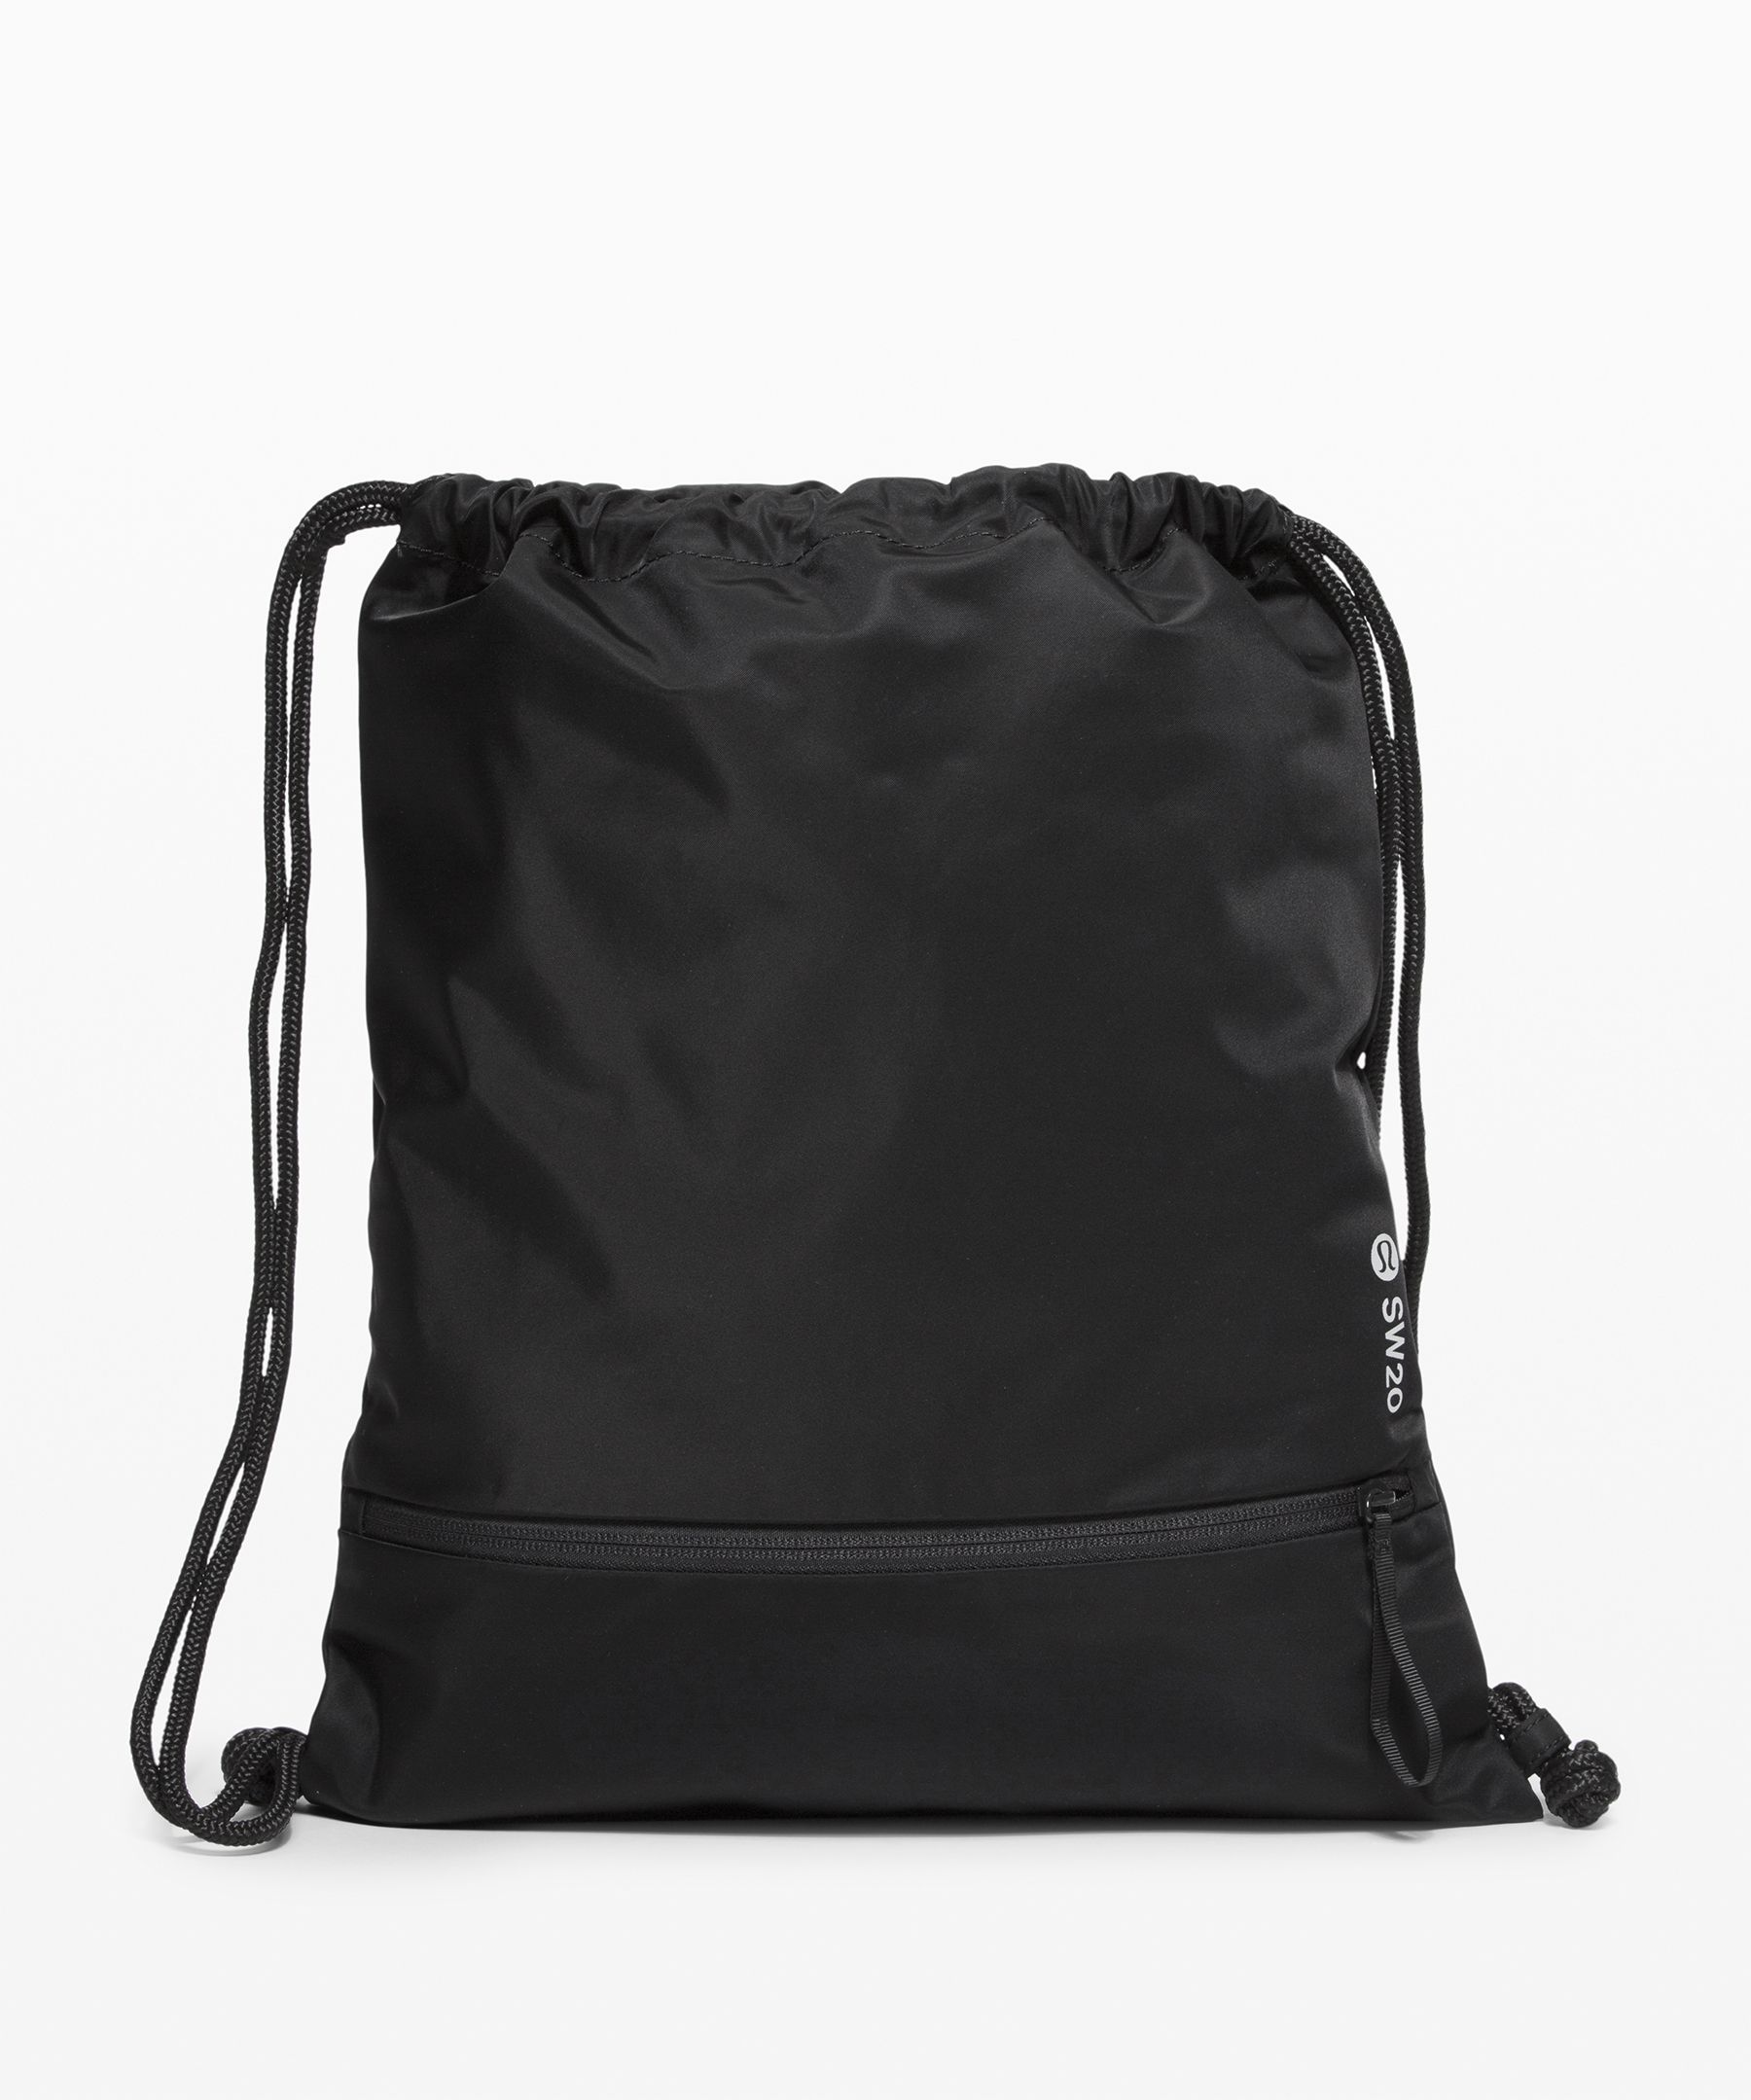 Lululemon Seawheeze Bag In Black